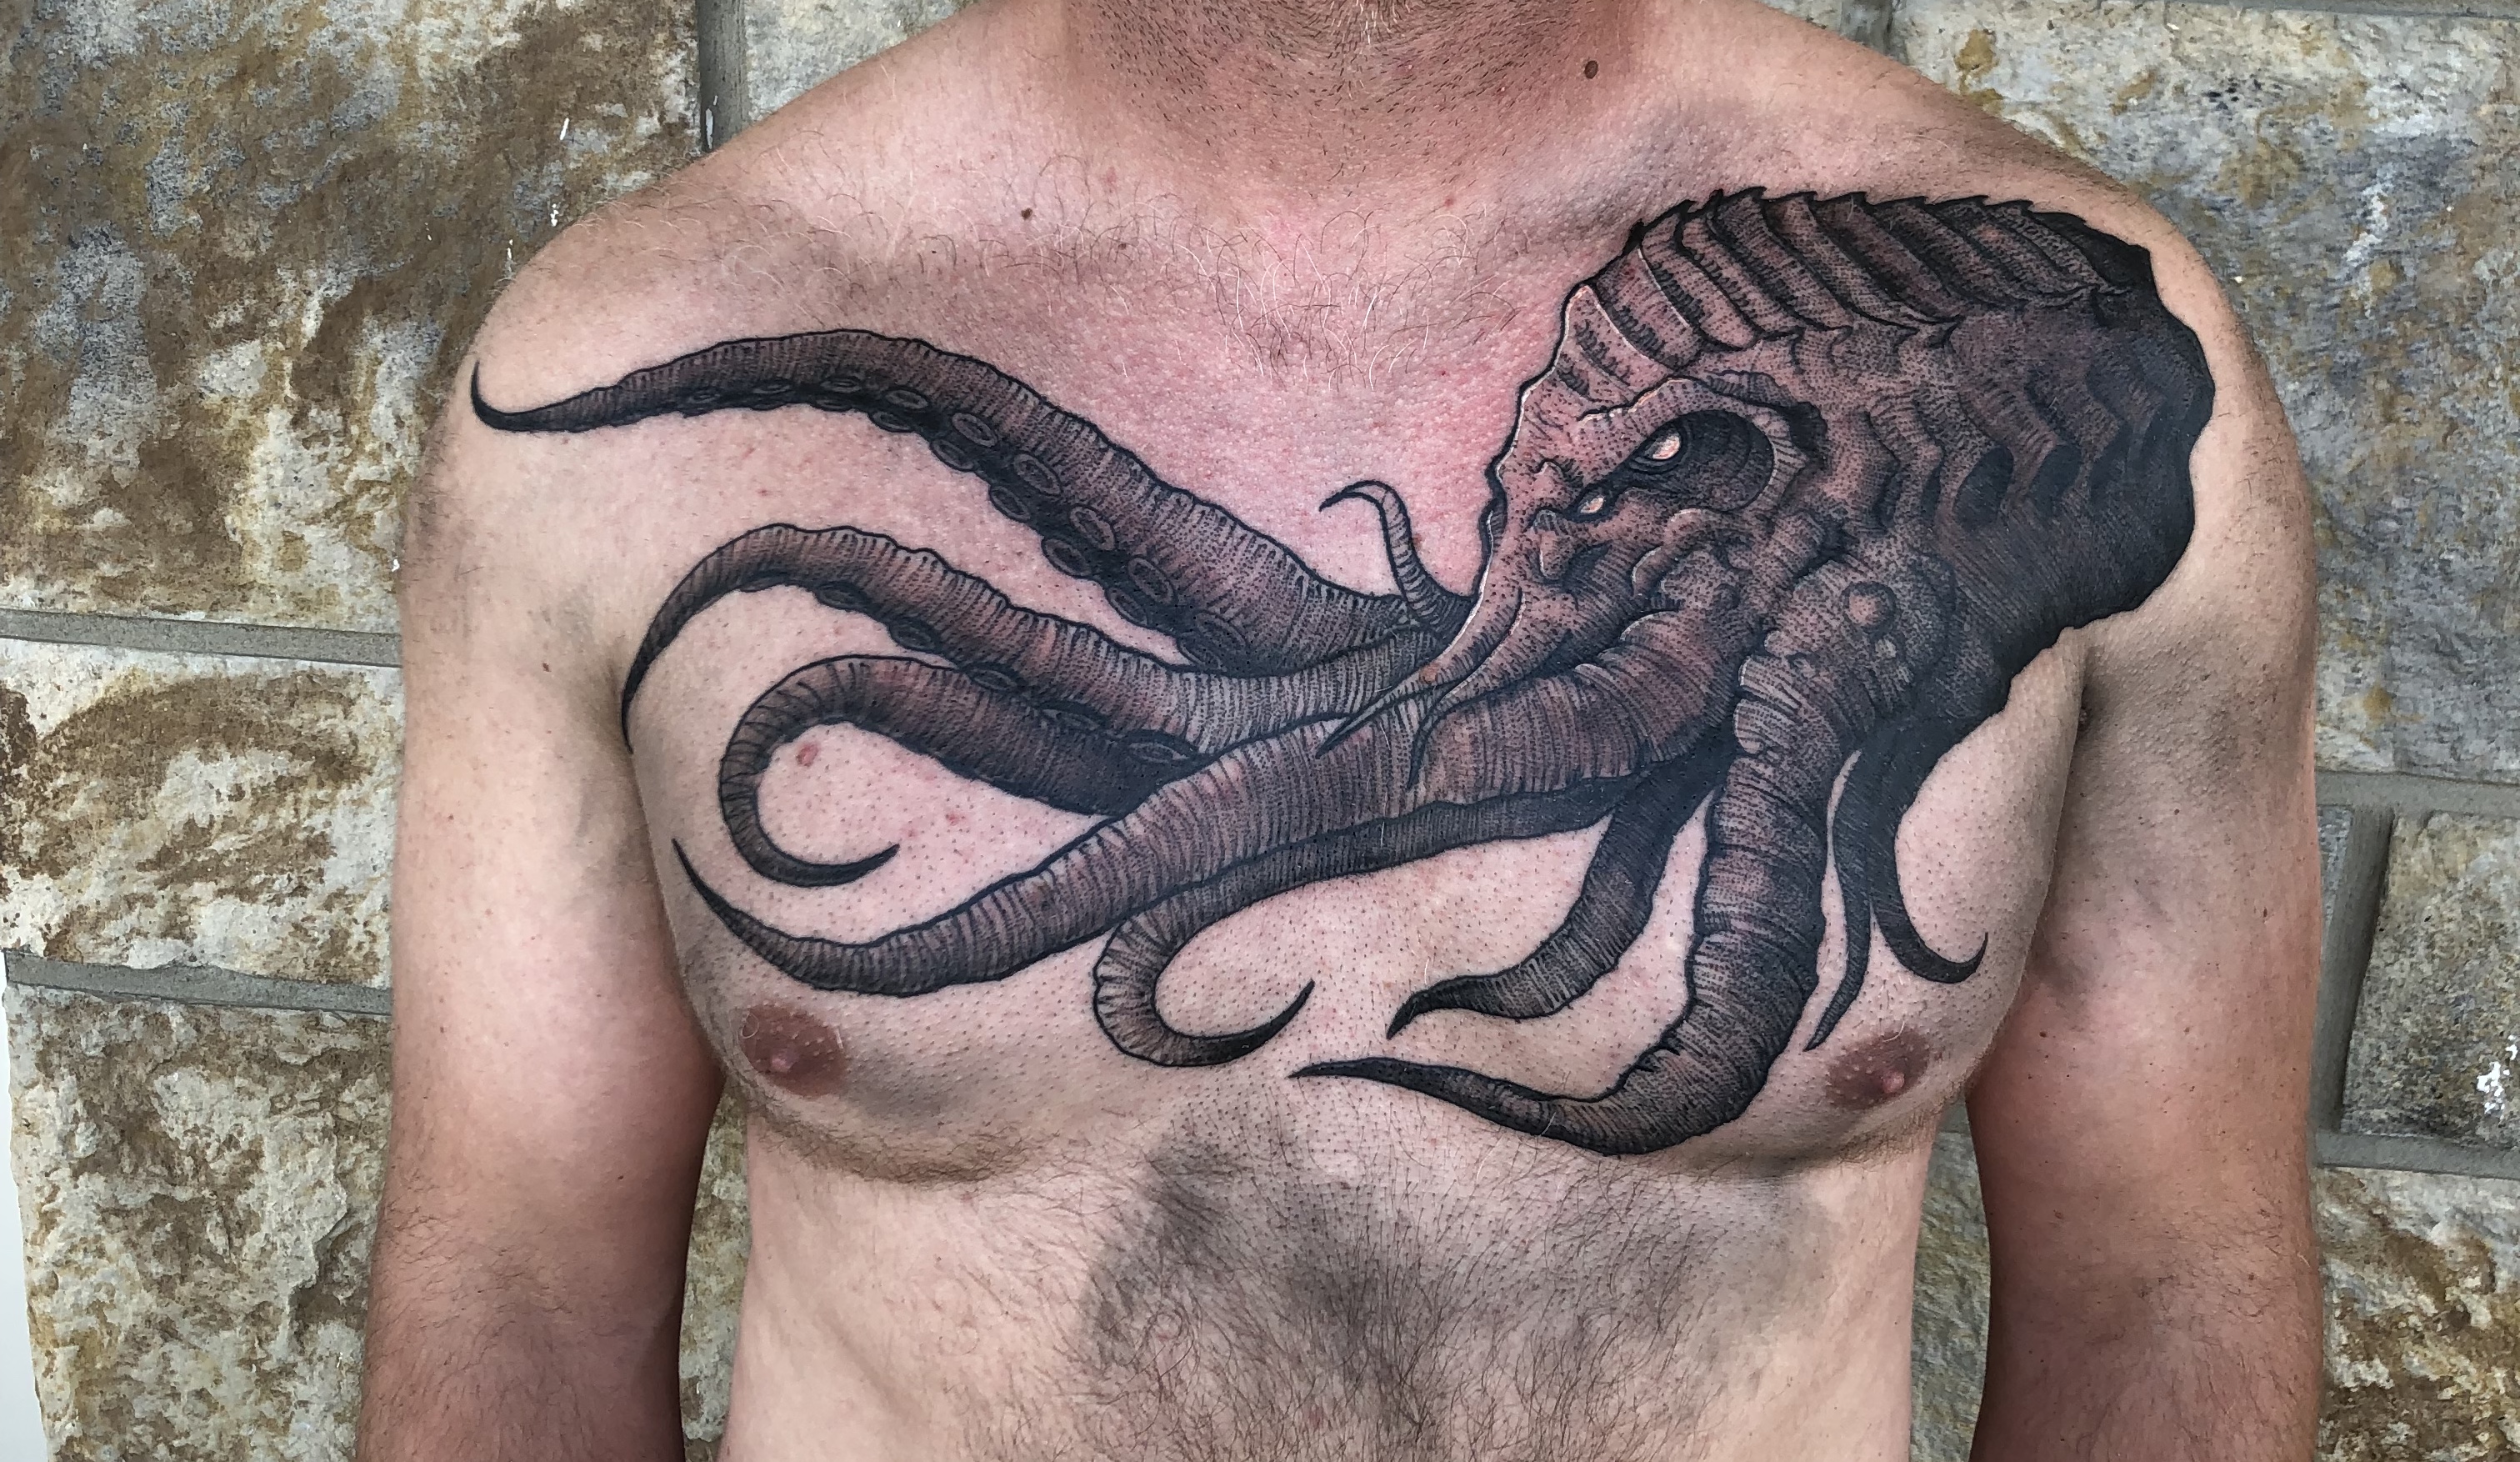 Tattoos - Kraken - 139154